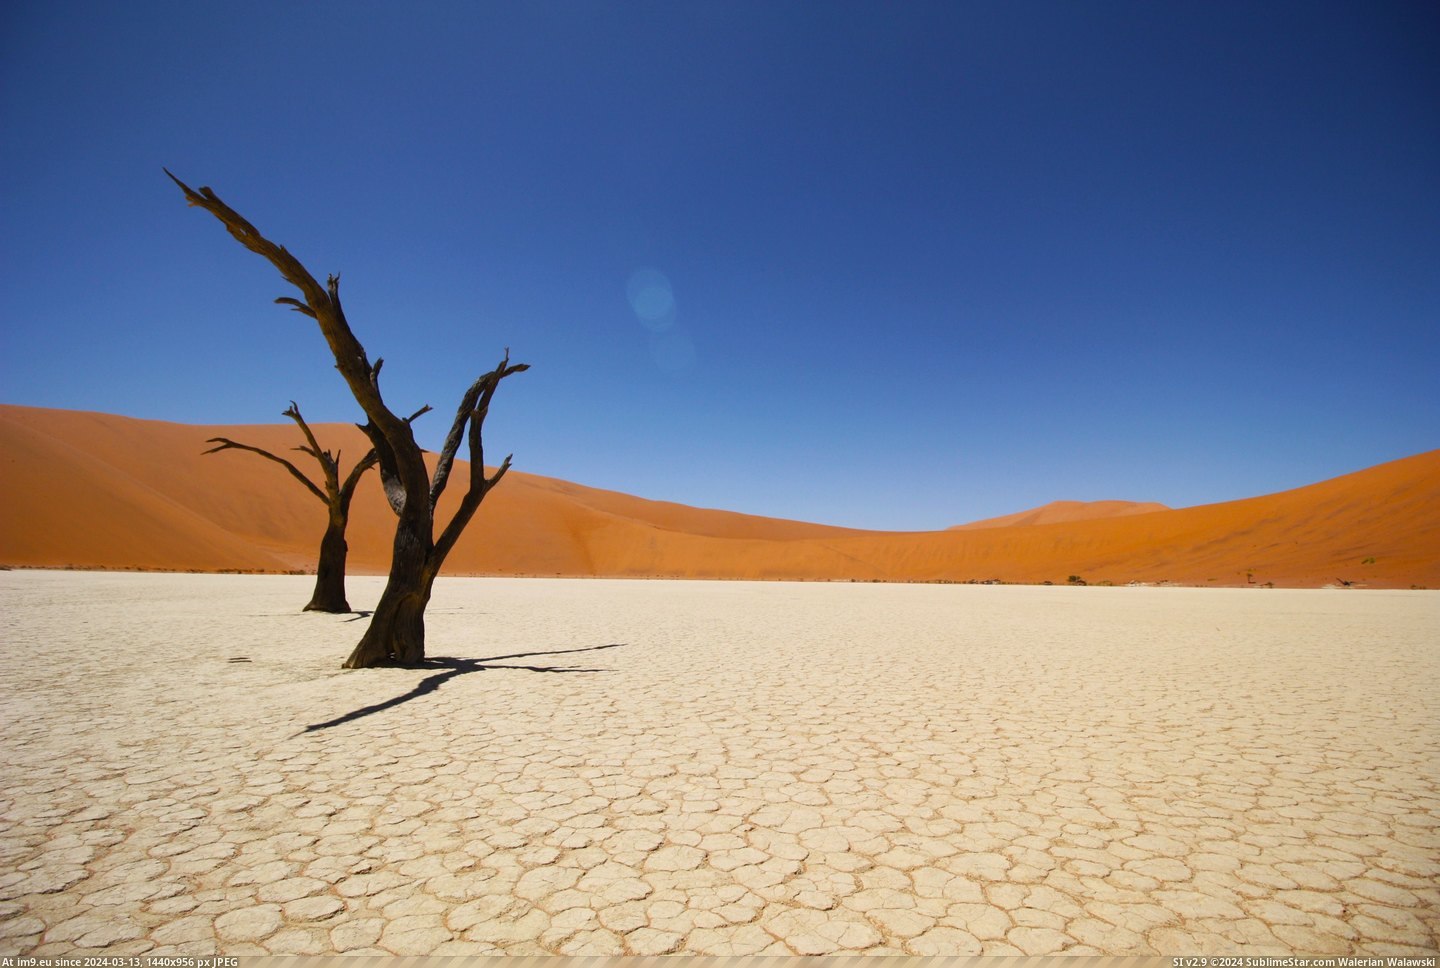 #Red #Desert #Sand #4272x2848 #Namib #Sossusvlei #Dunes #Pan #Salt [Earthporn] Sossusvlei salt pan and the red sand dunes of Namib Desert [4272x2848] Pic. (Obraz z album My r/EARTHPORN favs))